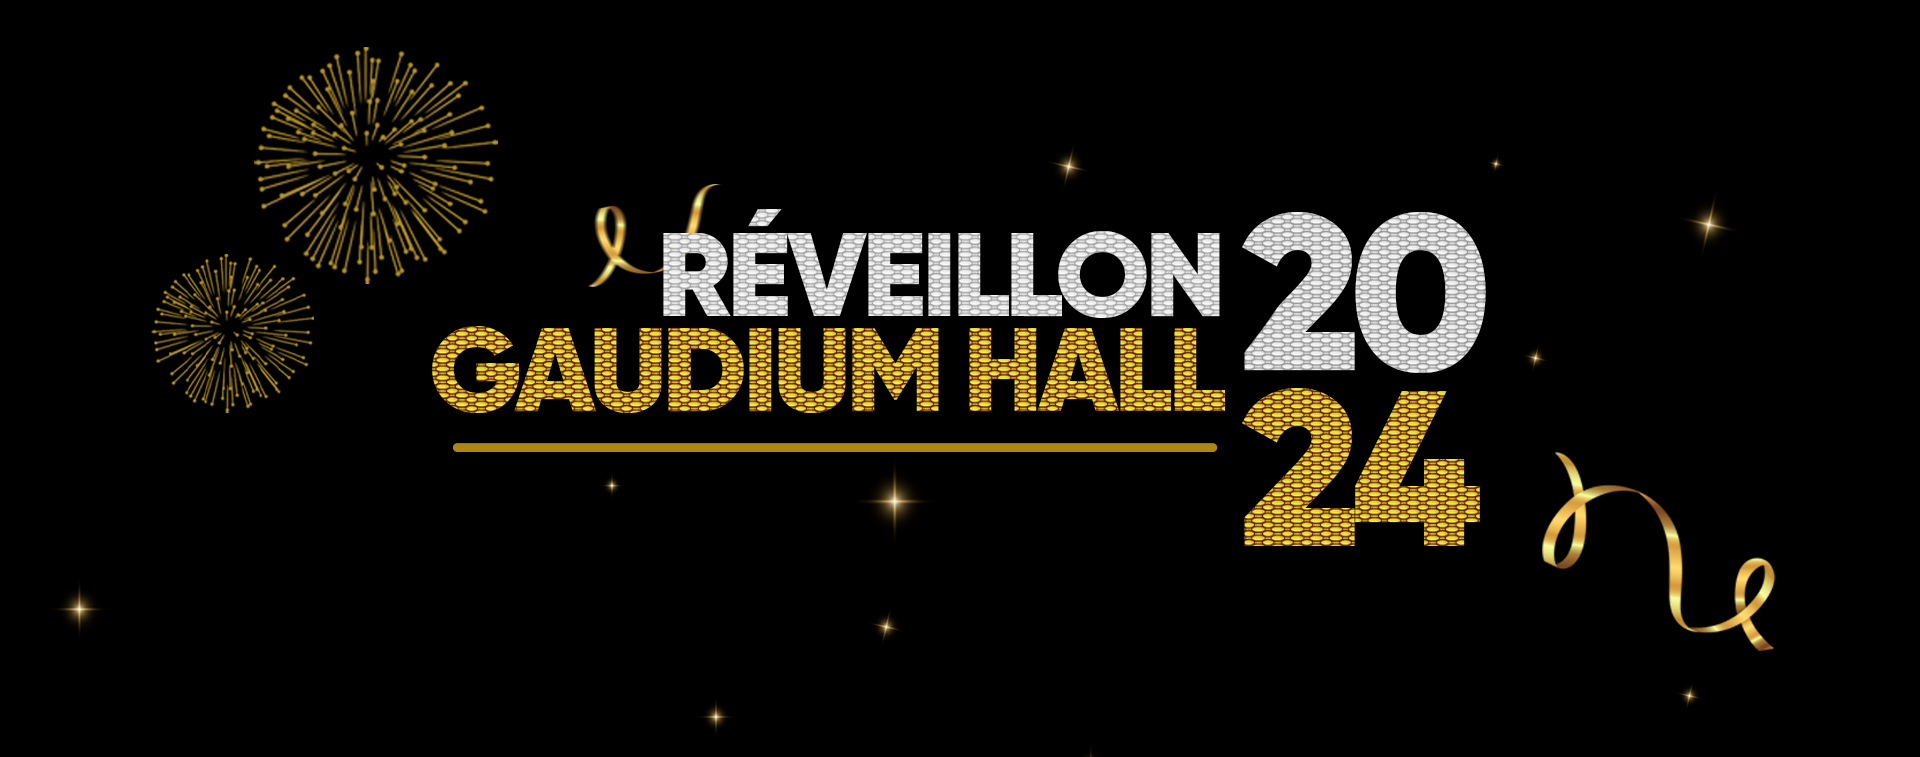 Reveillon Gaudium hall 